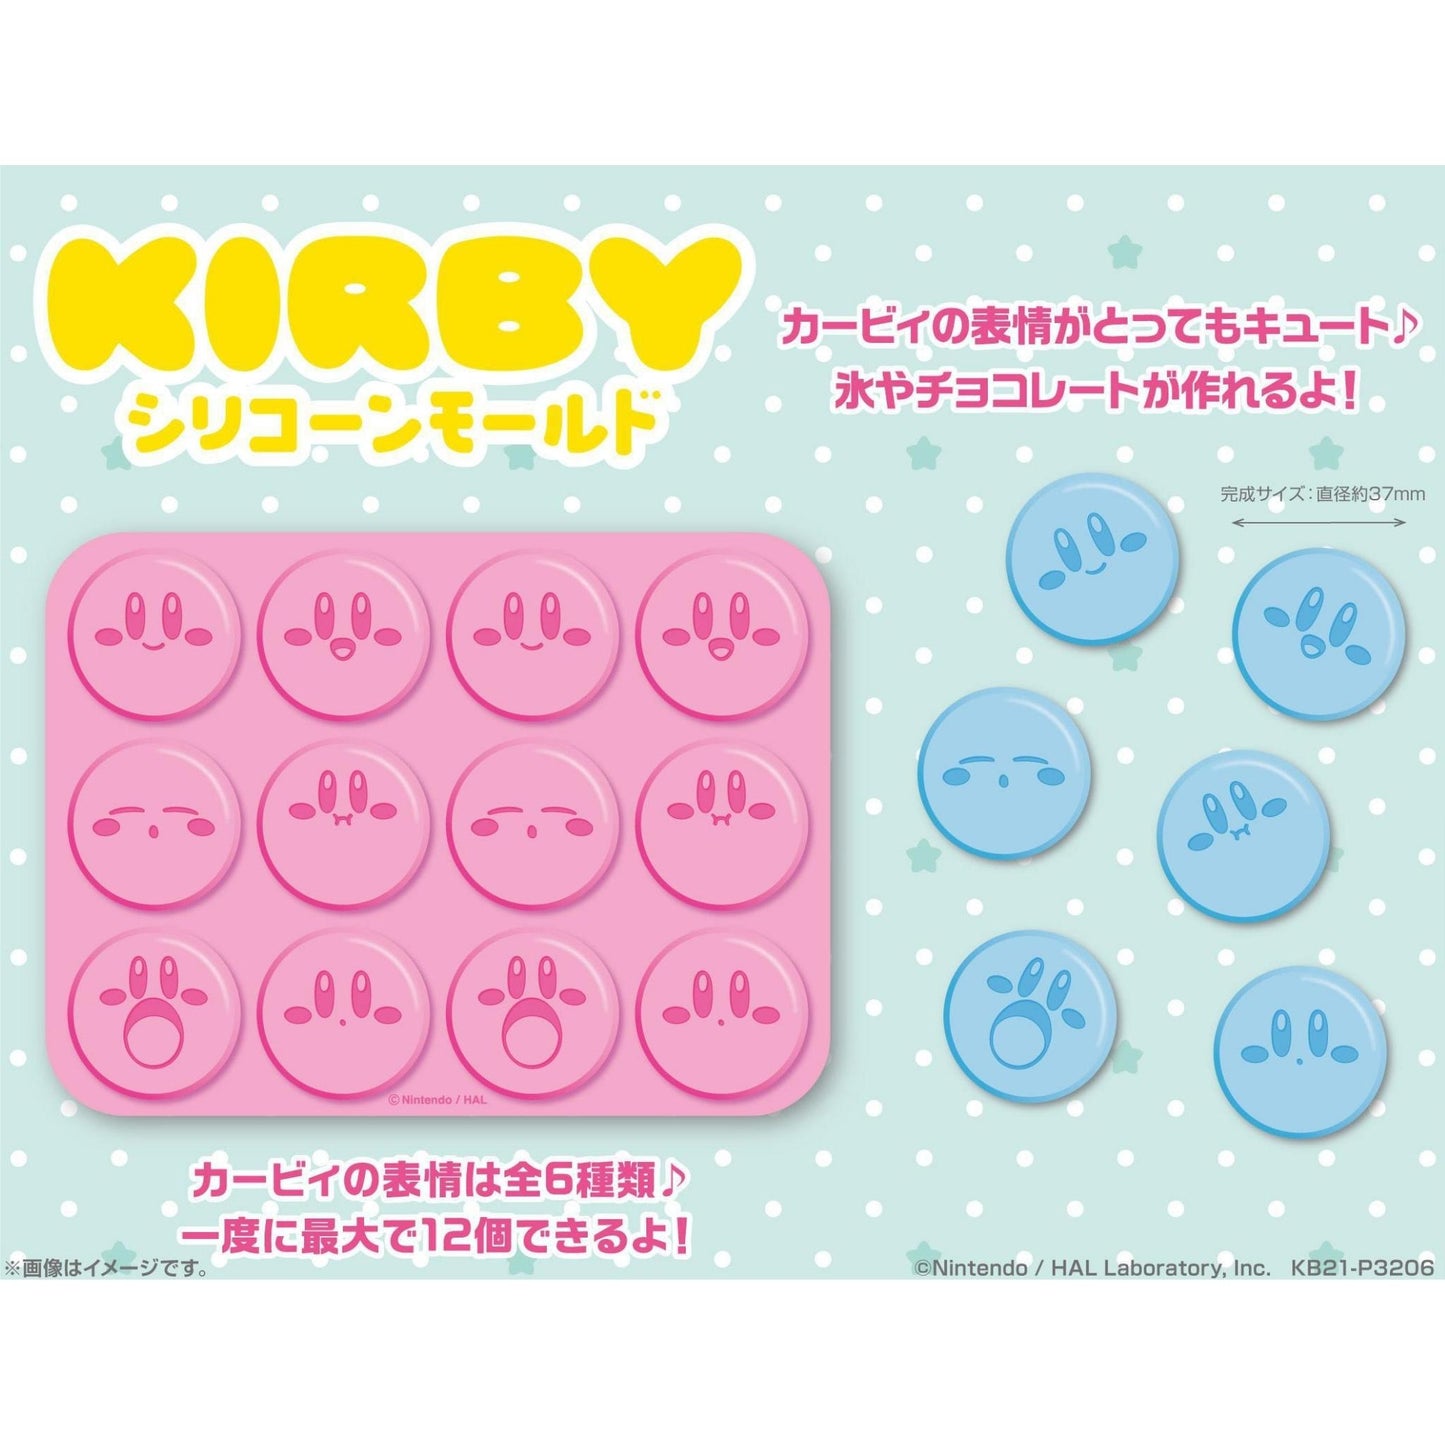 Kirby - Silikonform für Schoki oder Eiswürfel